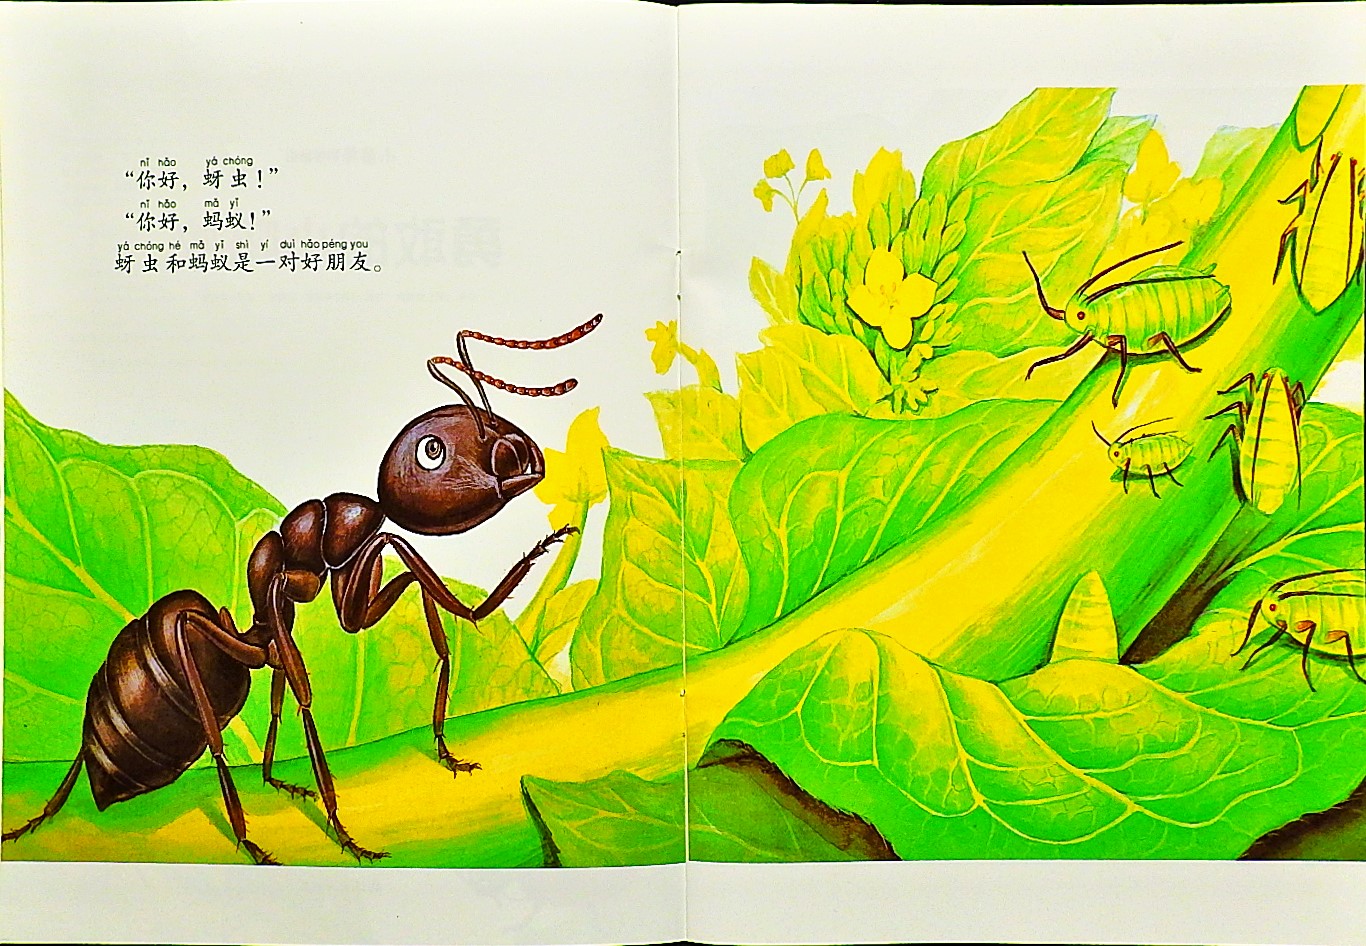 勇敢的小蚂蚁 (04),绘本,绘本故事,绘本阅读,故事书,童书,图画书,课外阅读